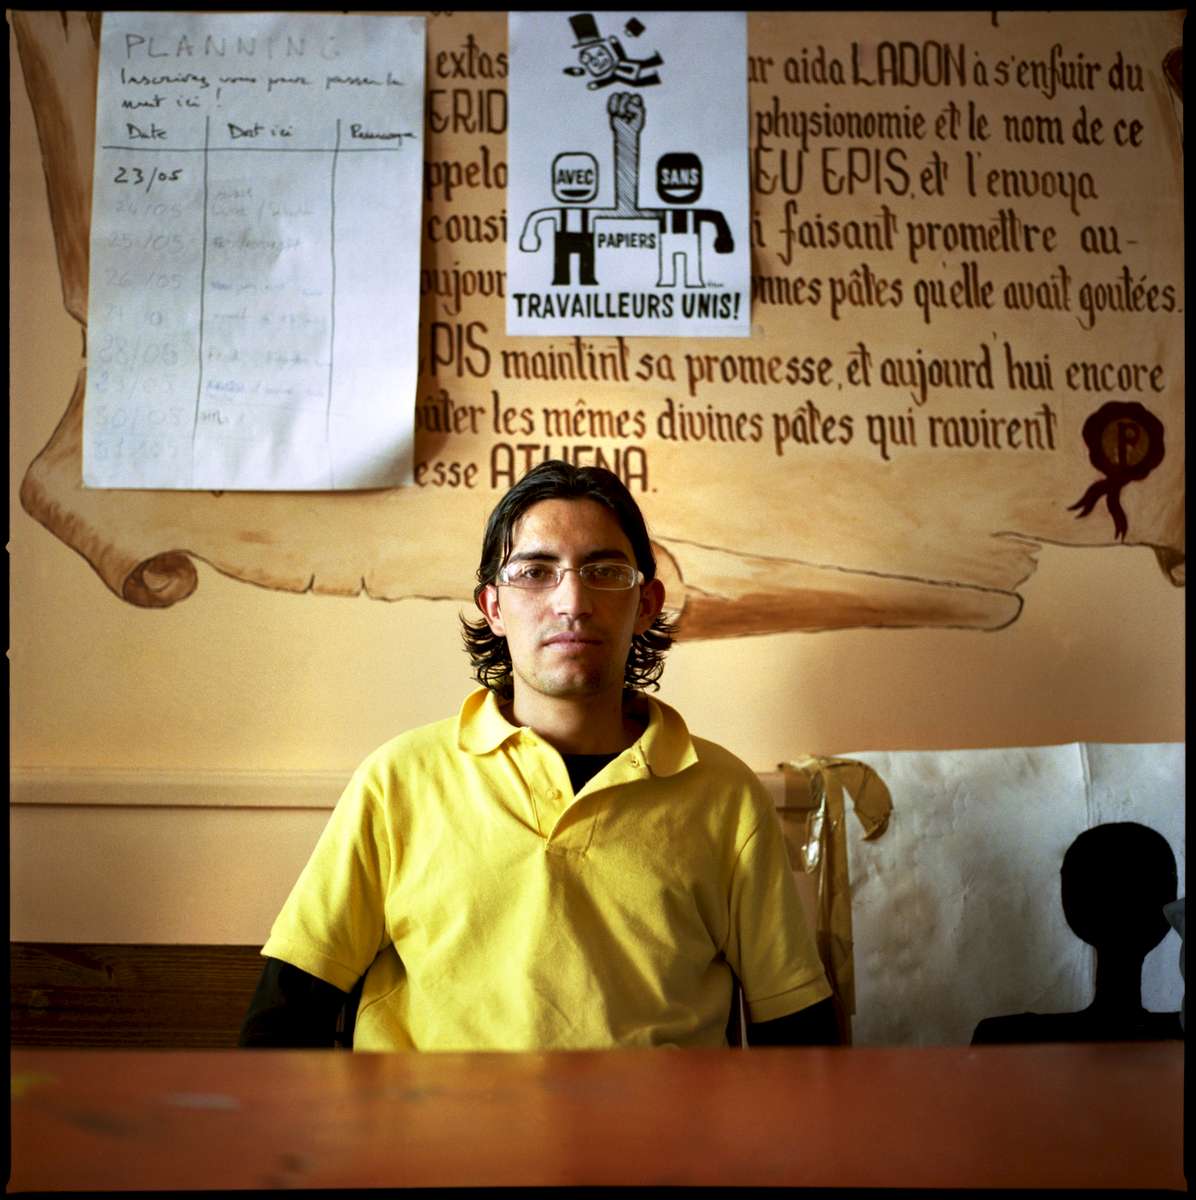 Kamel est Tunisien et est arrivé en France en 2004. En grêve depuis le 19 Mai 2008, il travaille dans l'un des restaurants du groupe PASTAPAPA. Il occupe avec 7 autres grévistes, et quelques soutiens, le restaurant PASTAPAPA de la rue Jean Mermoz à Paris.